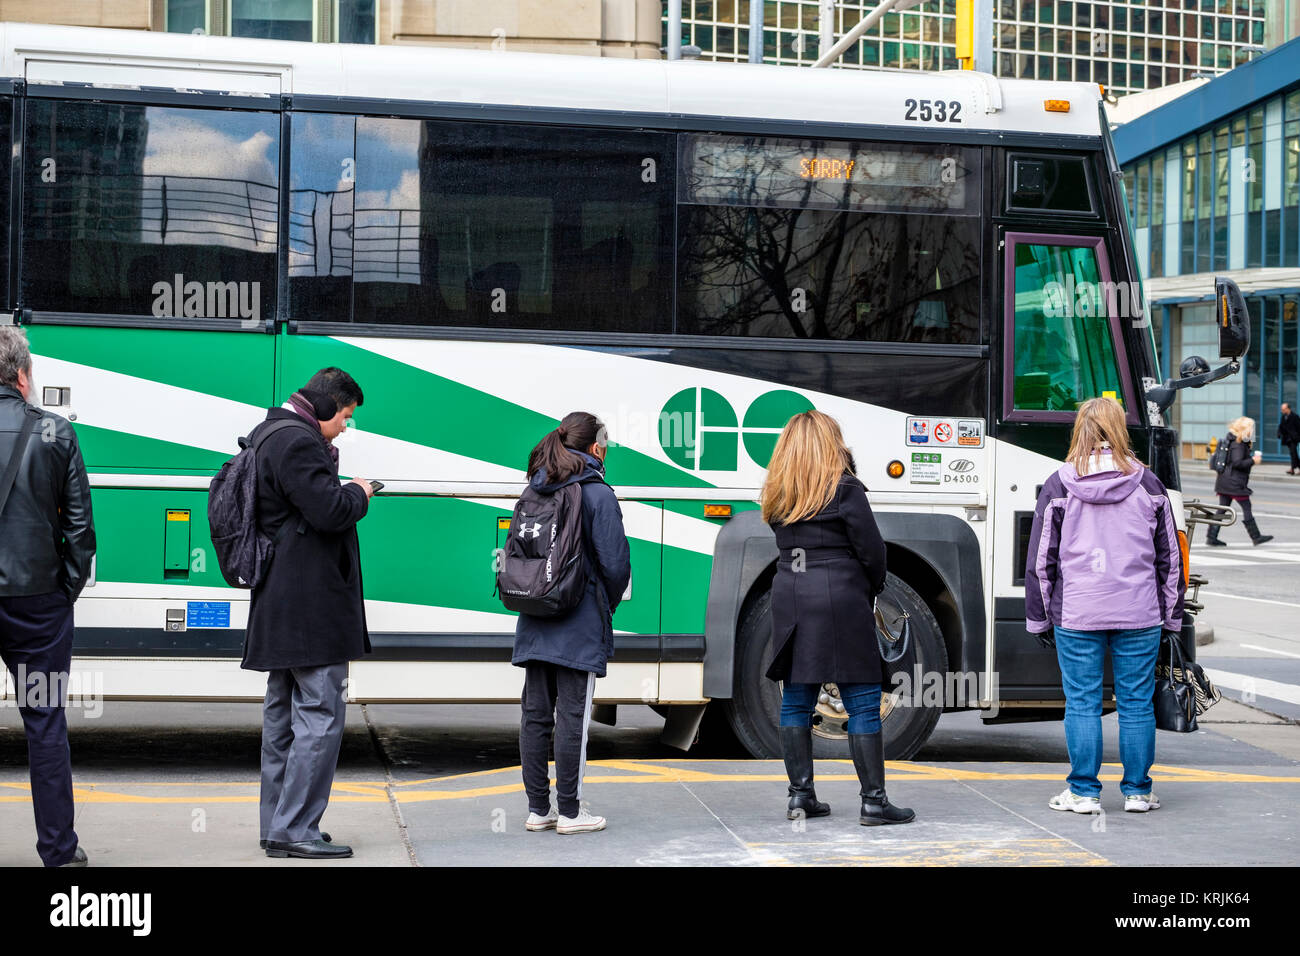 Union Station Bus Terminal, pendolari allineati a bordo di un autobus Go utilizzato per il trasporto pubblico di persone che vivono nella regione GTA, Toronto, Ontario, Foto Stock